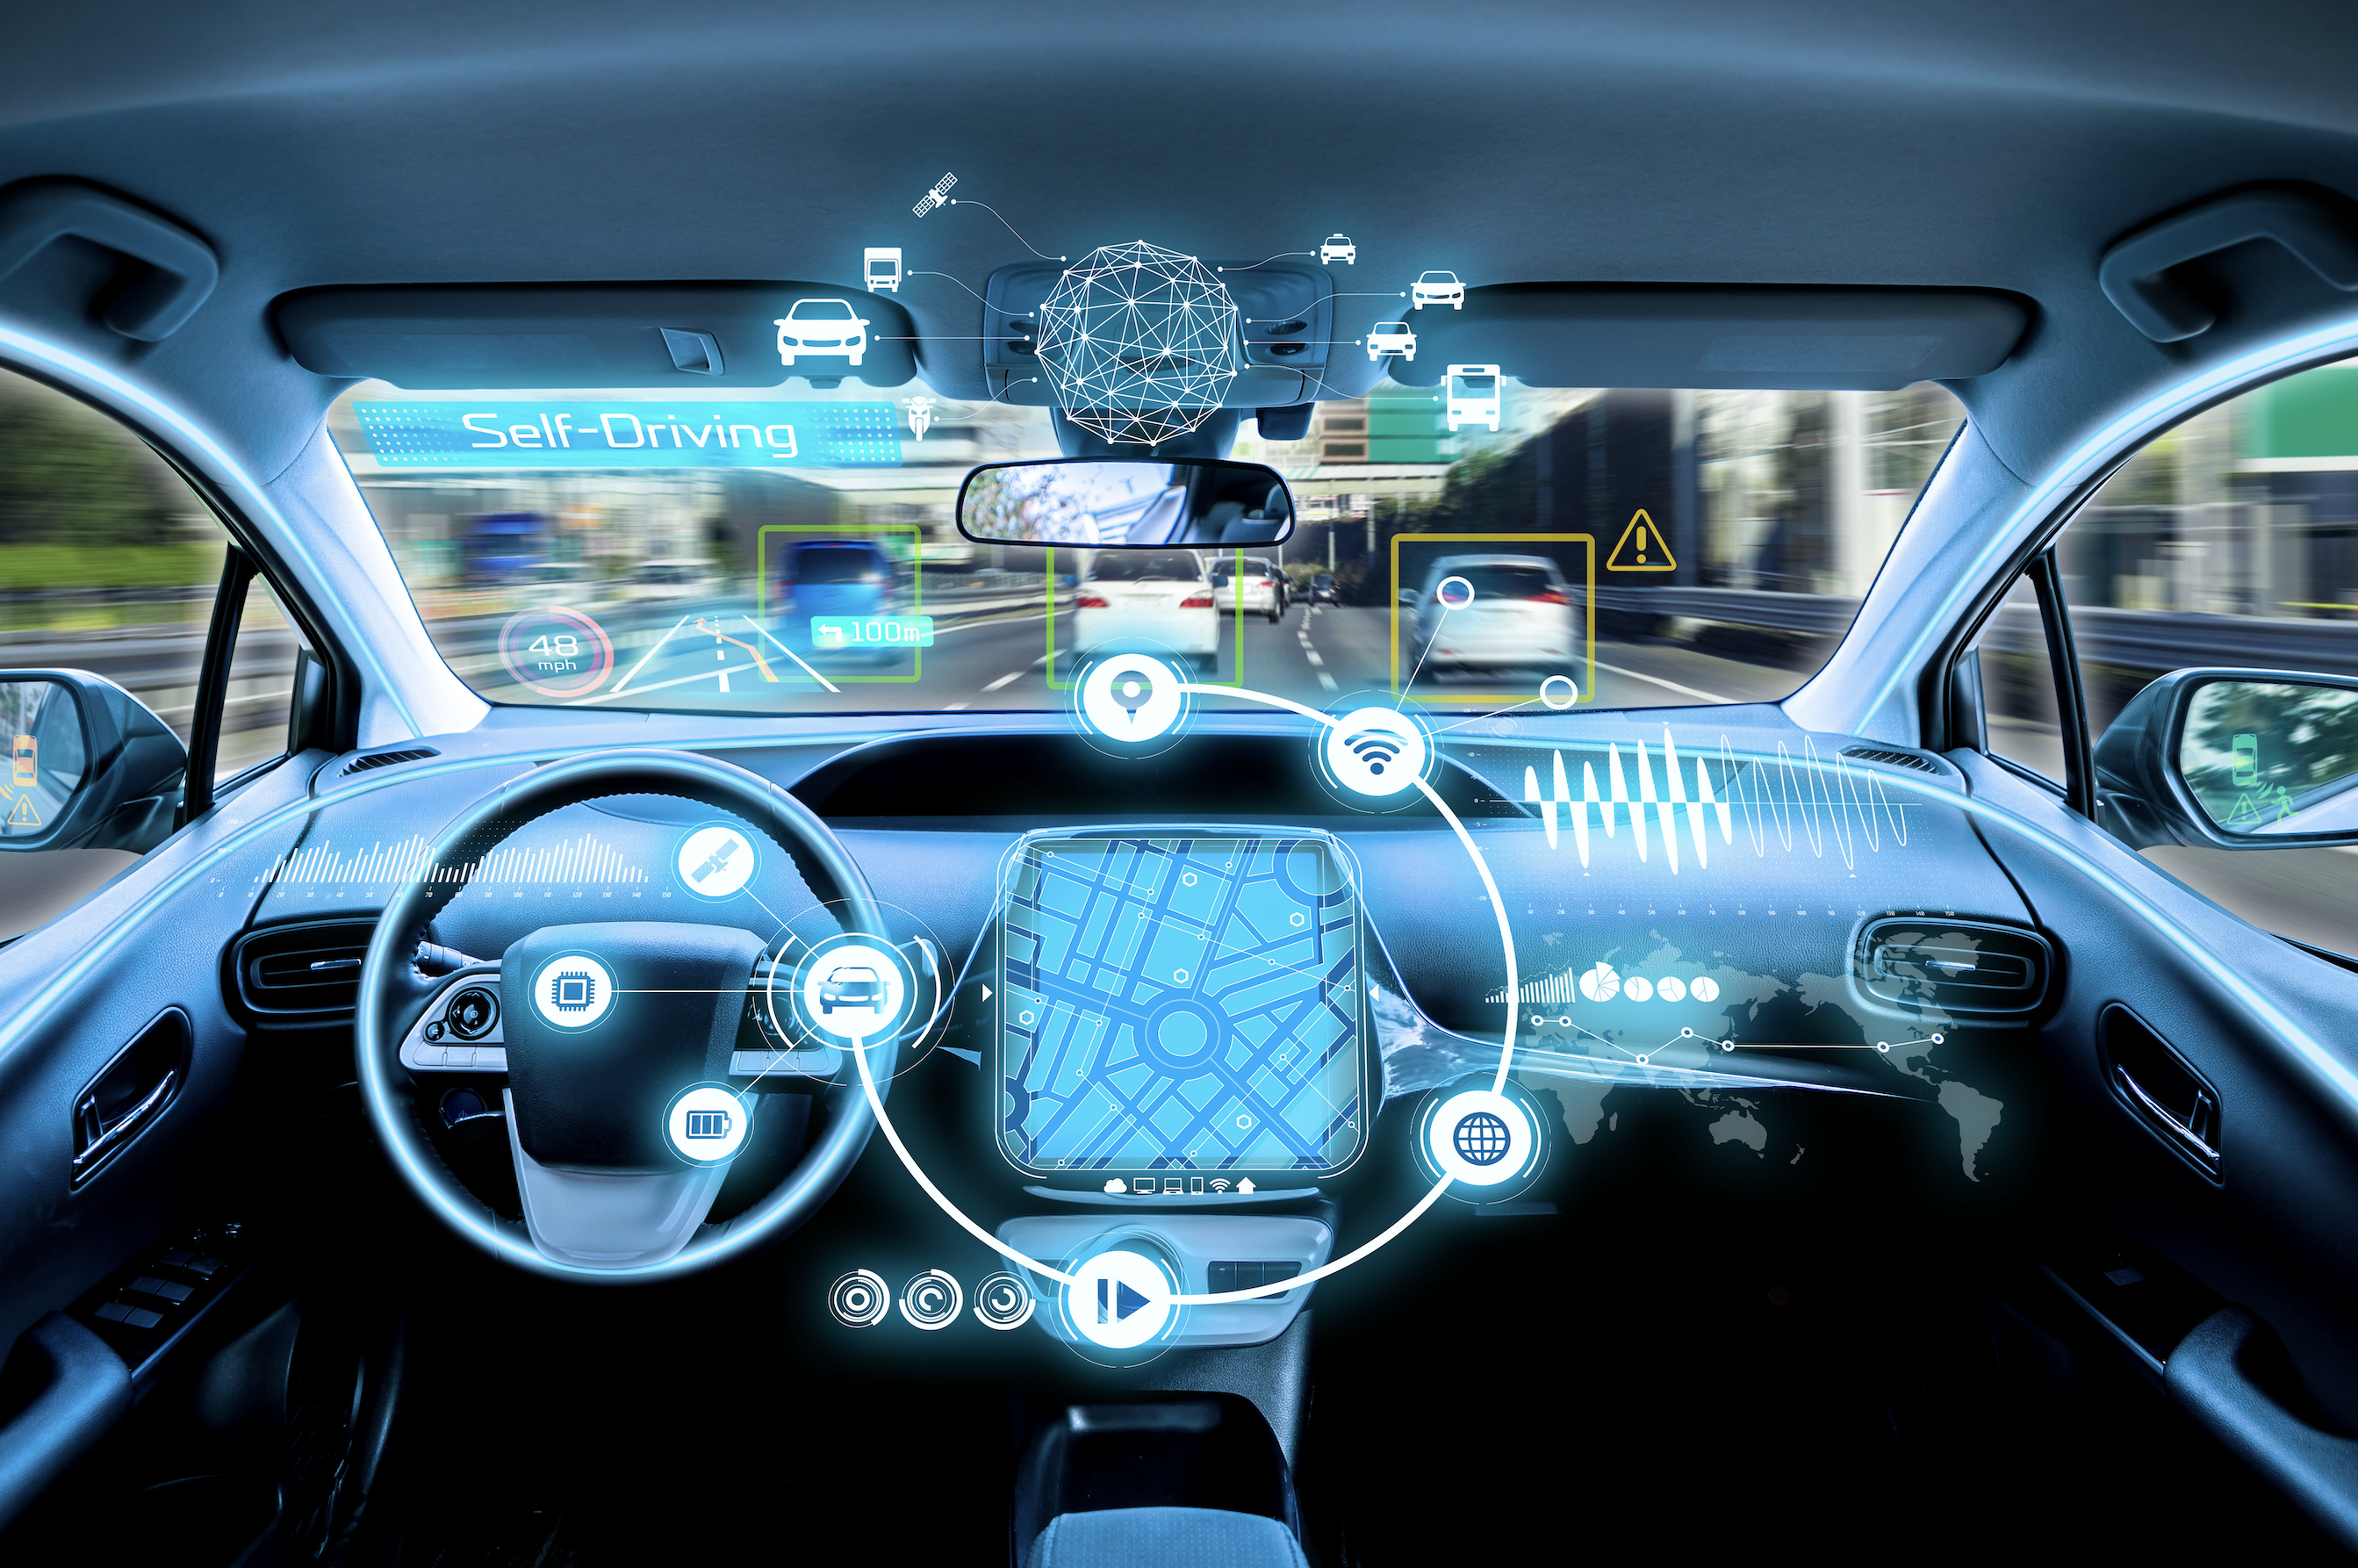 Connected and Autonomous Vehicles